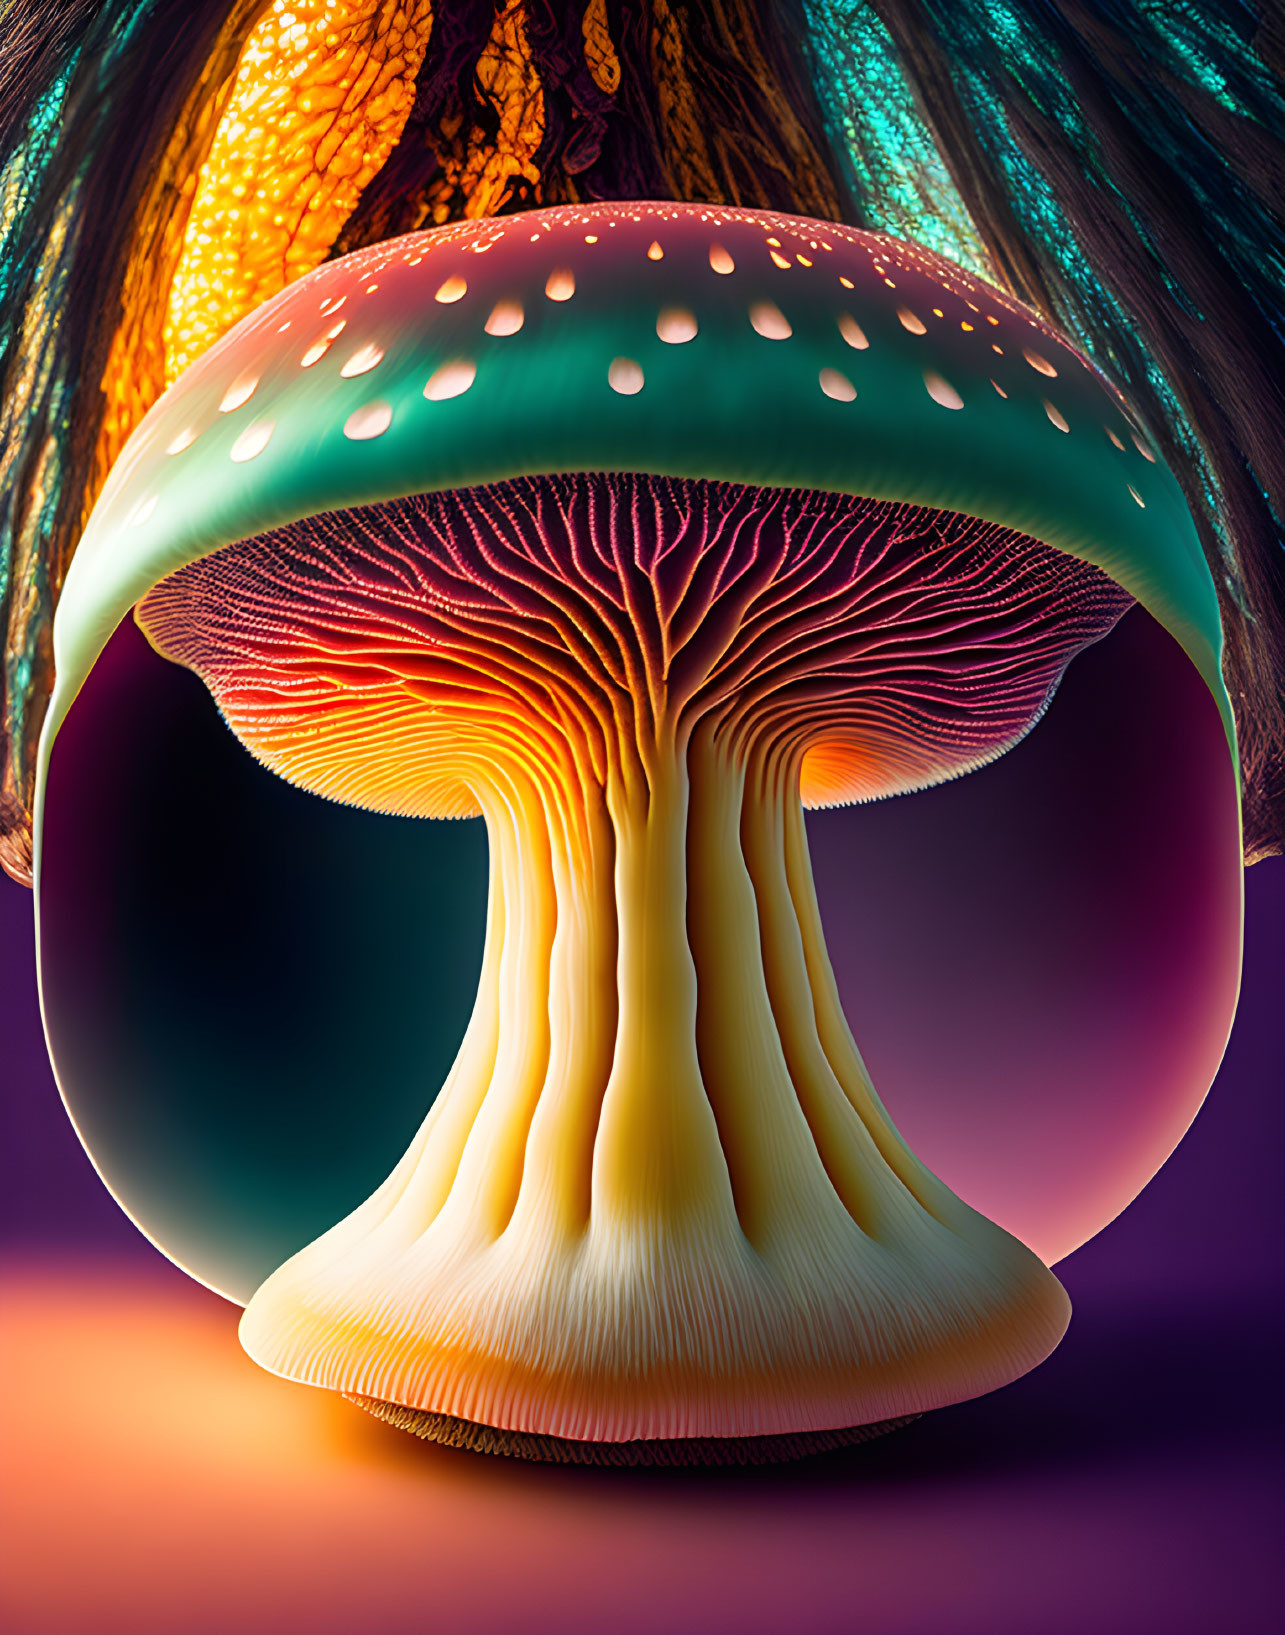 Colorful digital artwork of a luminous mushroom on purple background